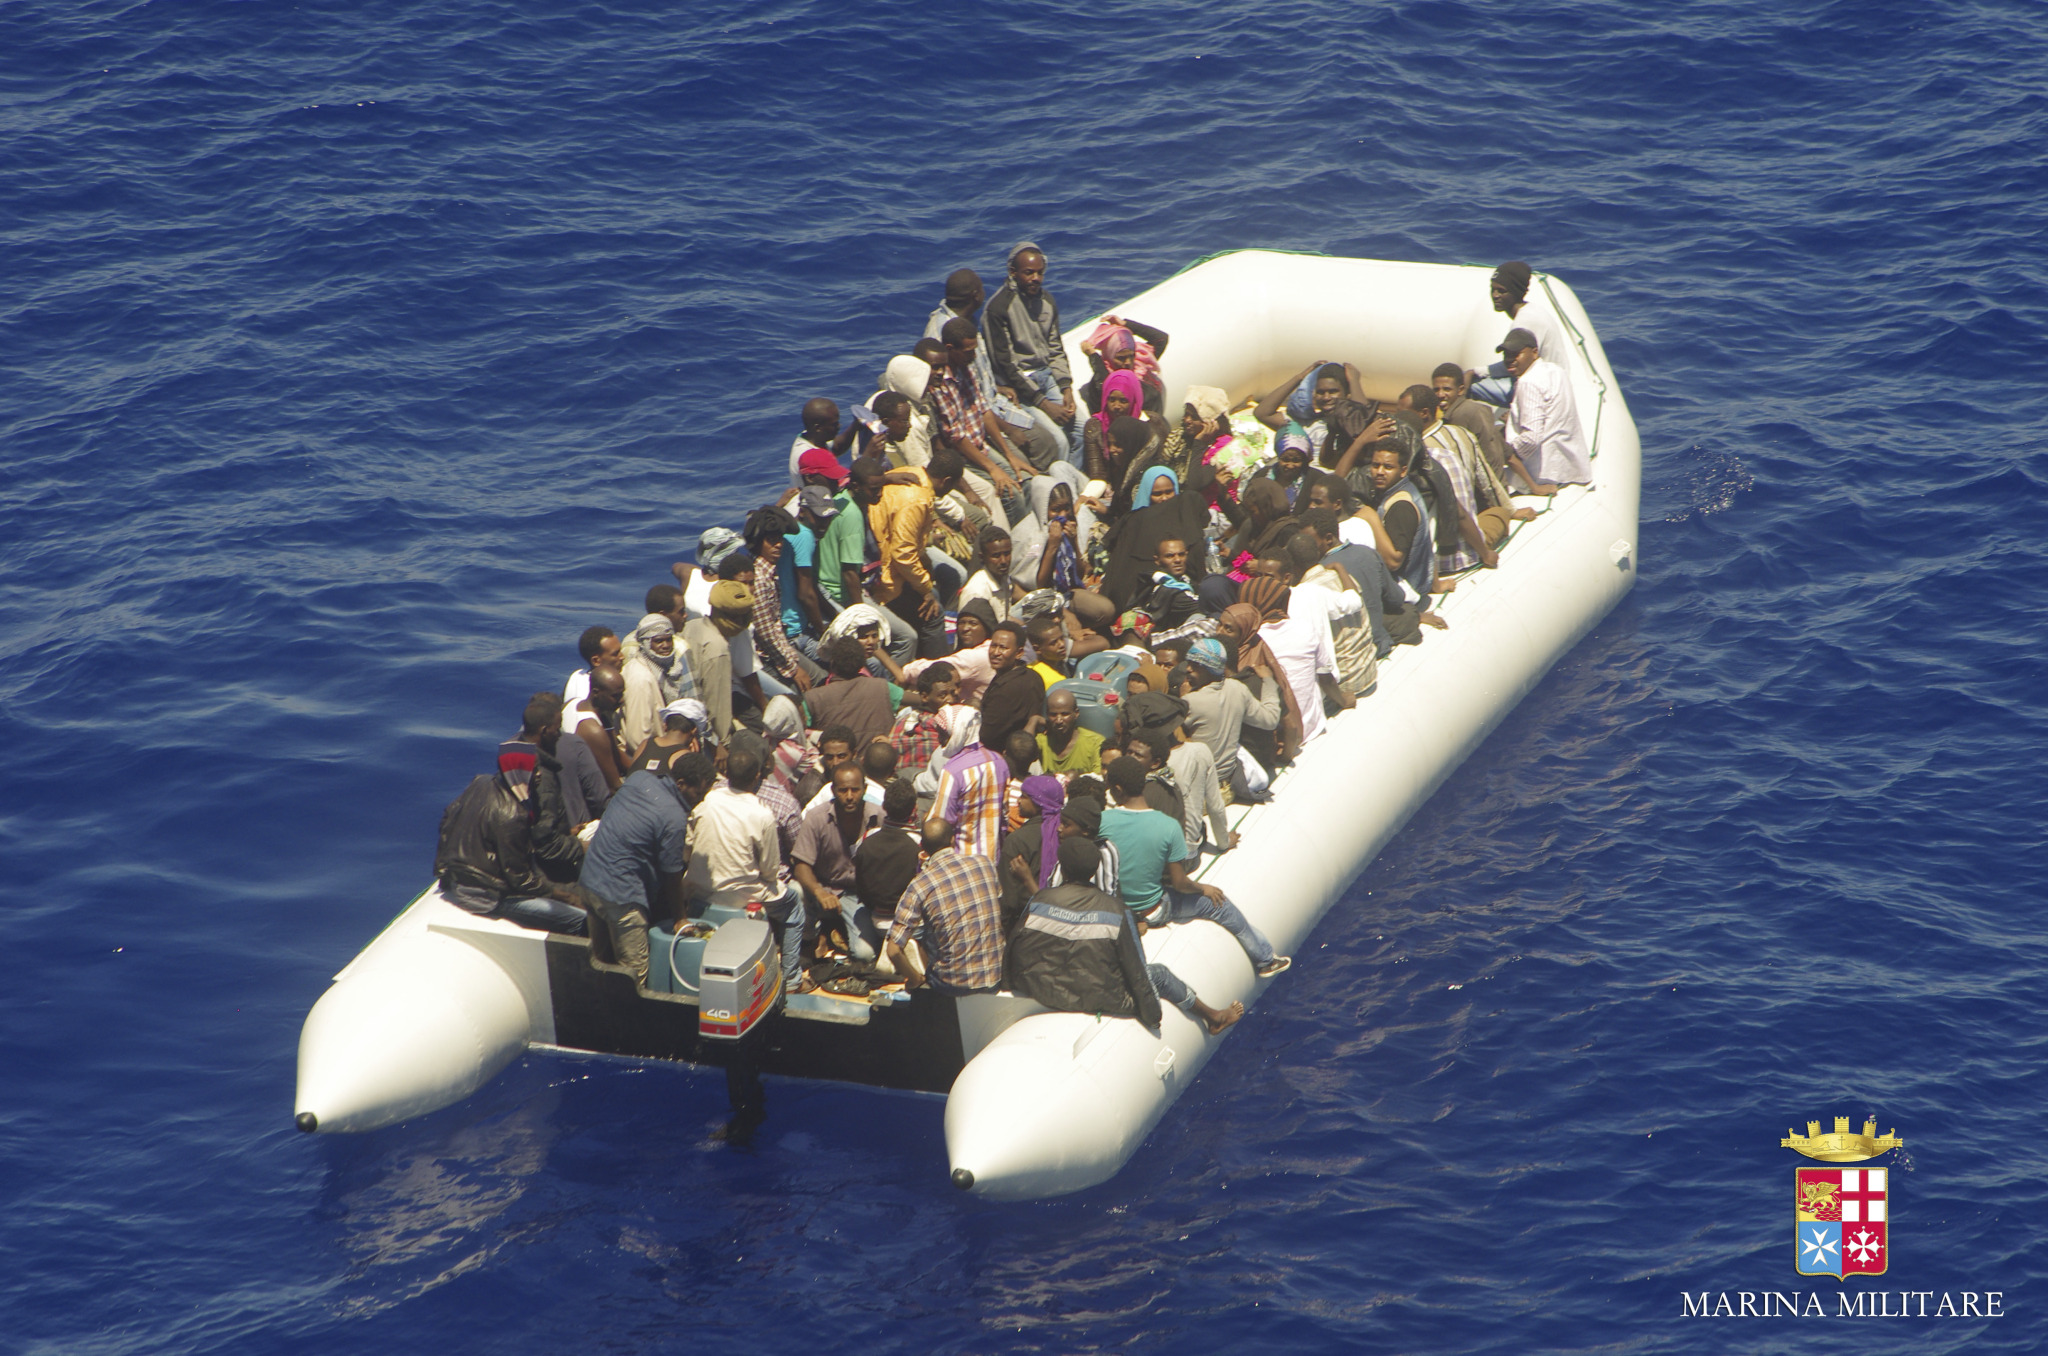 Immigrazione: l'analisi oltre i confini italiani